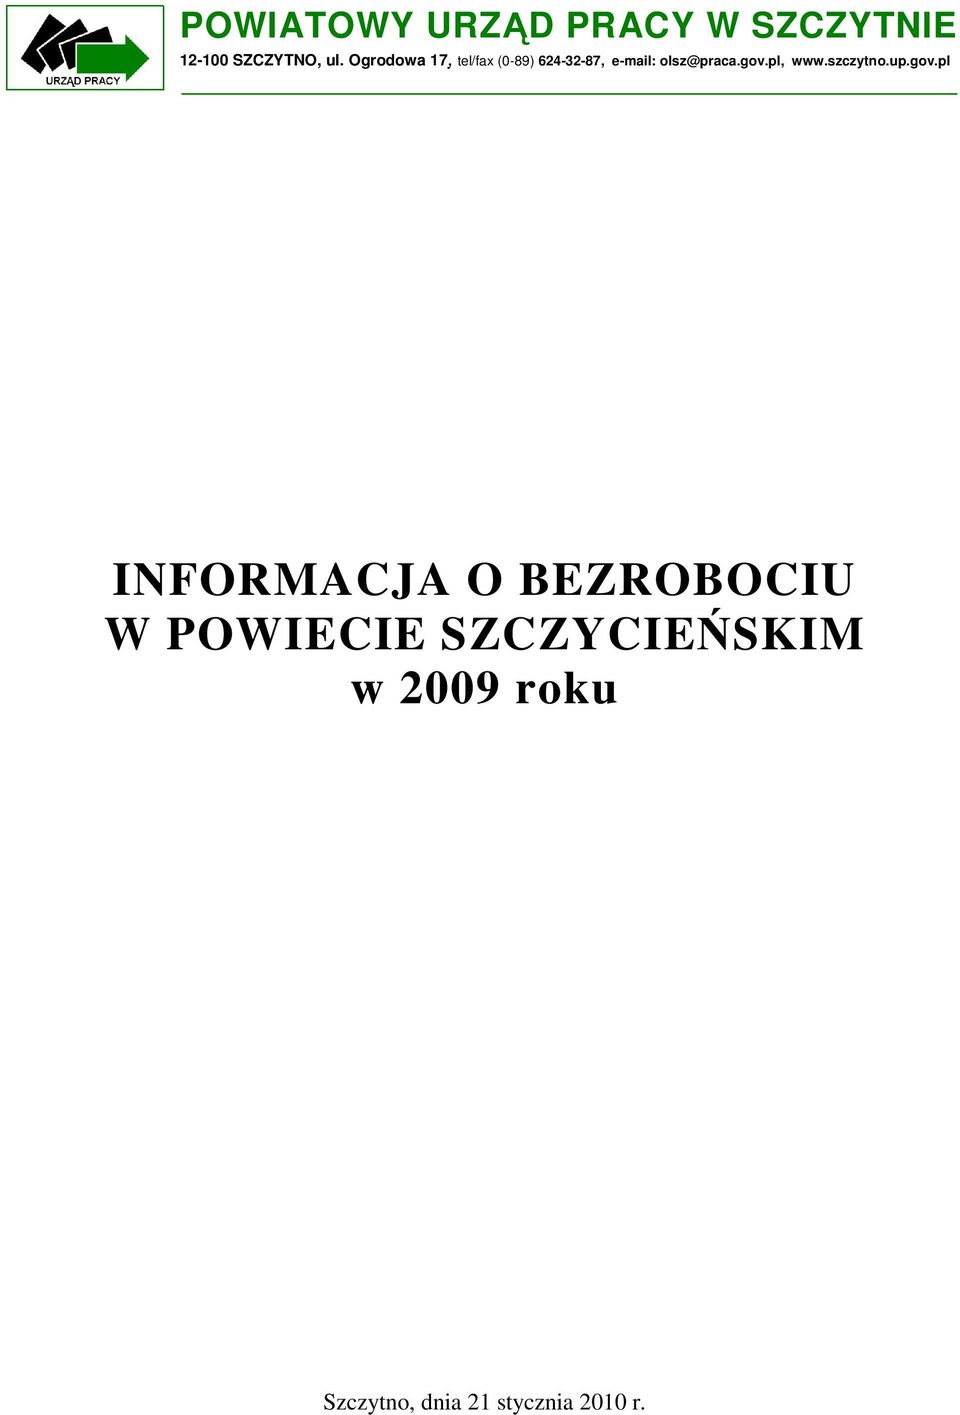 gov.pl, www.szczytno.up.gov.pl INFORMACJA O BEZROBOCIU W